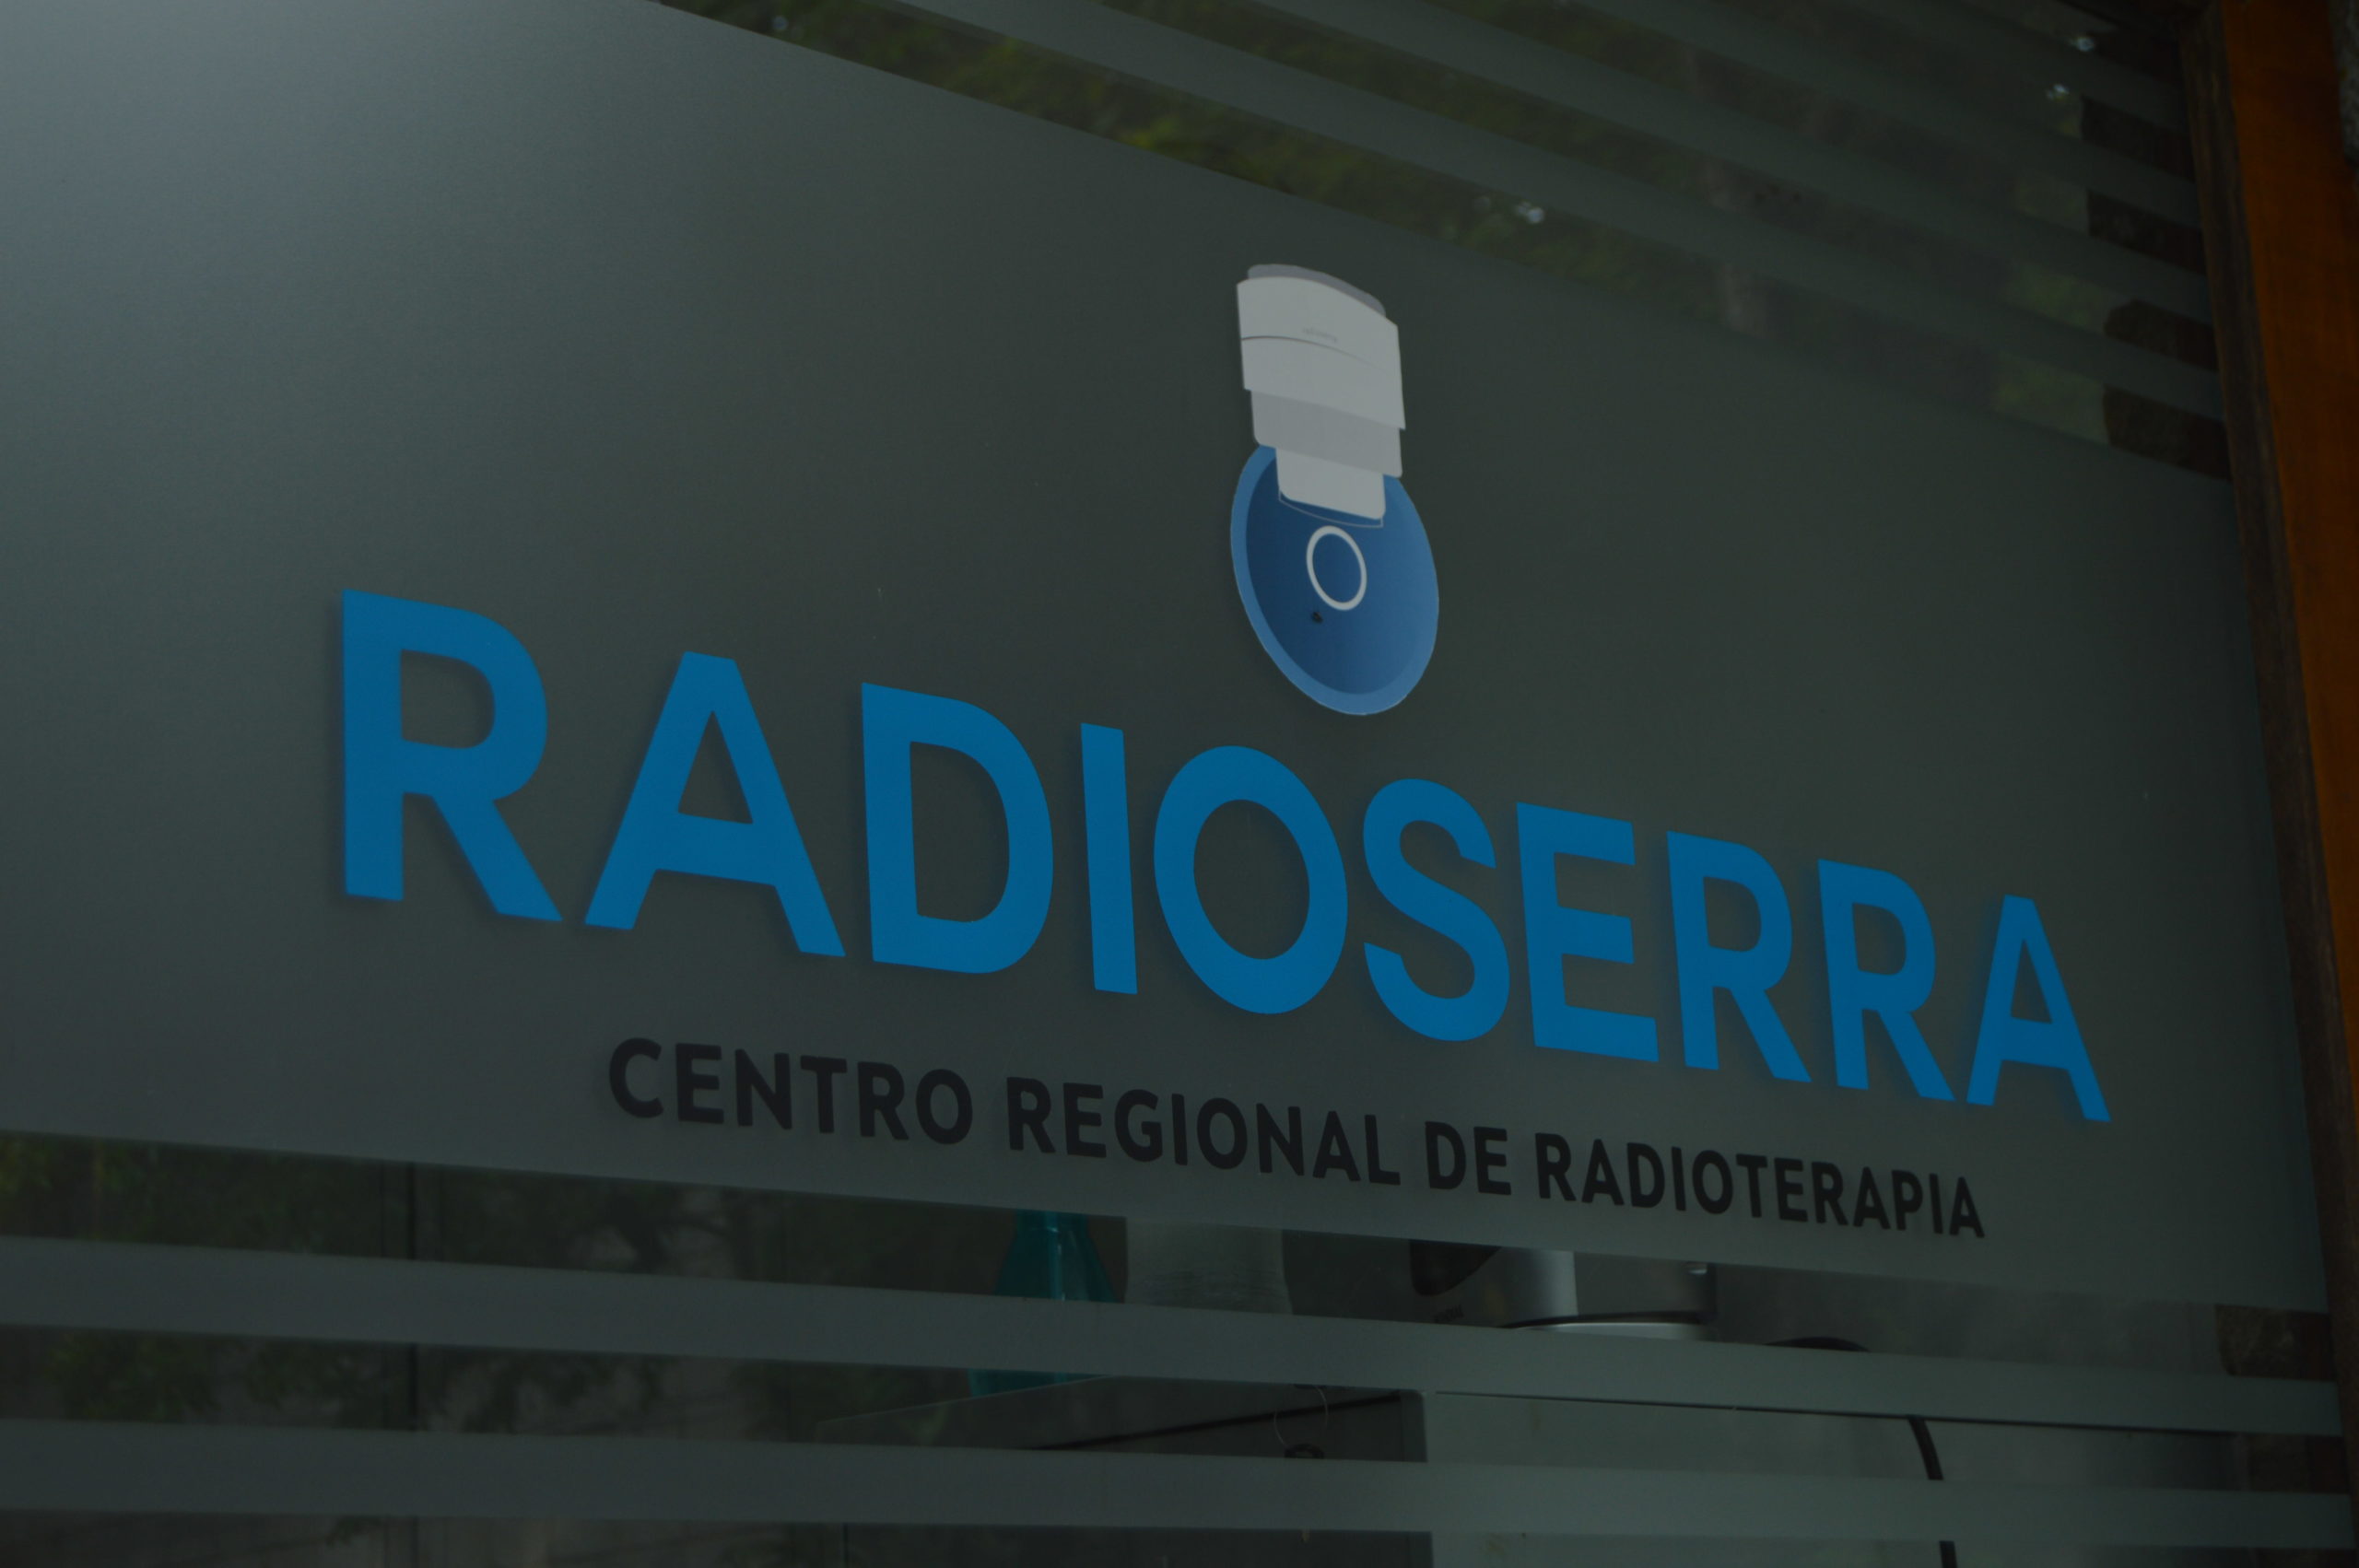 RadioSerra organiza programação especial neste Outubro Rosa